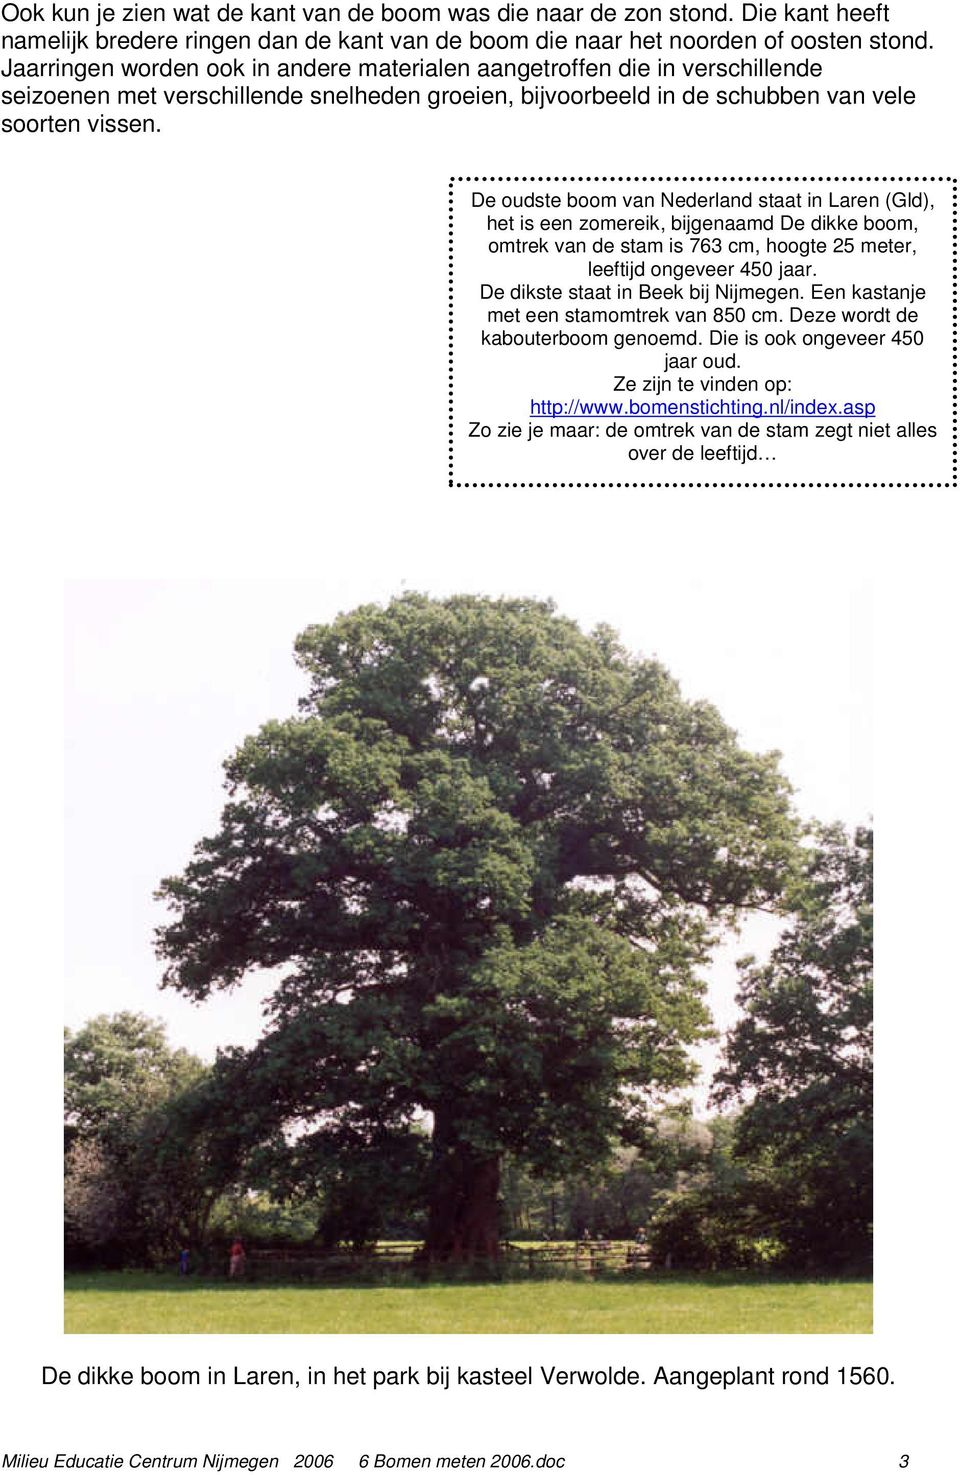 De oudste boom van Nederland staat in Laren (Gld), het is een zomereik, bijgenaamd De dikke boom, omtrek van de stam is 763 cm, hoogte 25 meter, leeftijd ongeveer 450 jaar.